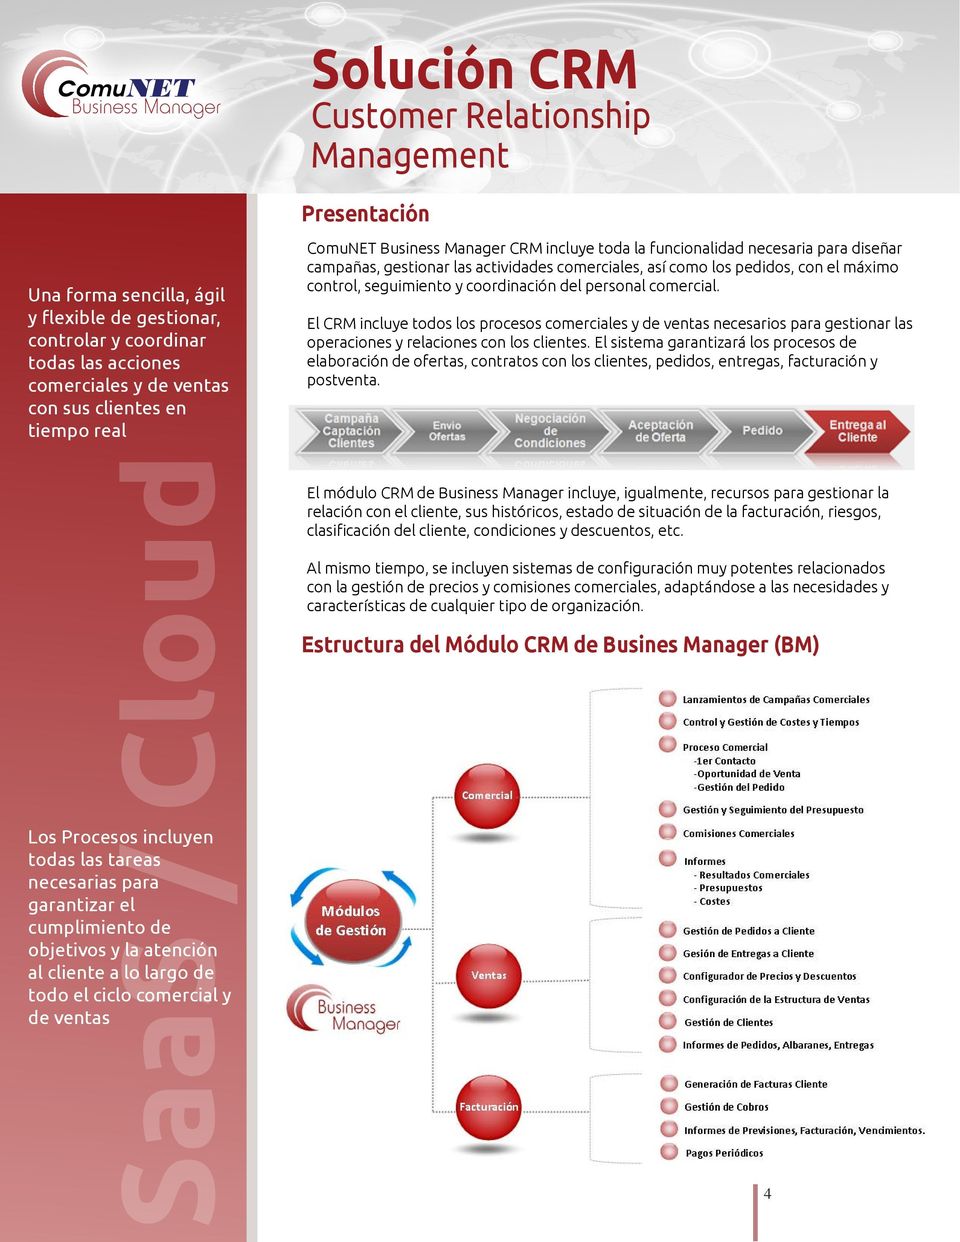 Manager CRM incluye toda la funcionalidad necesaria para diseñar campañas, gestionar las actividades comerciales, así como los pedidos, con el máximo control, seguimiento y coordinación del personal